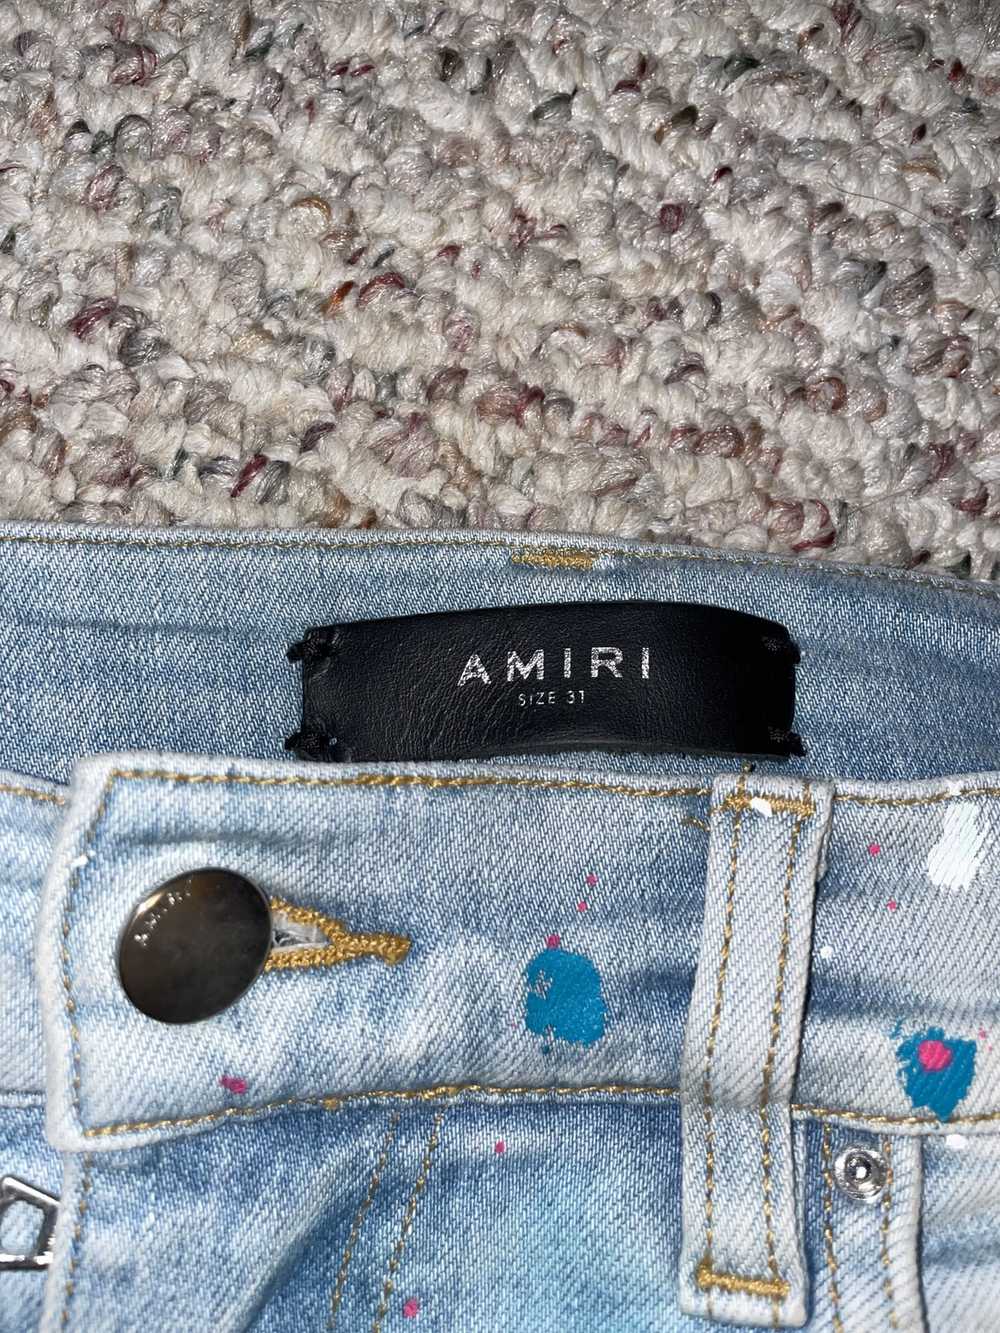 Amiri Amiri Paint Splatter Jeans - image 2